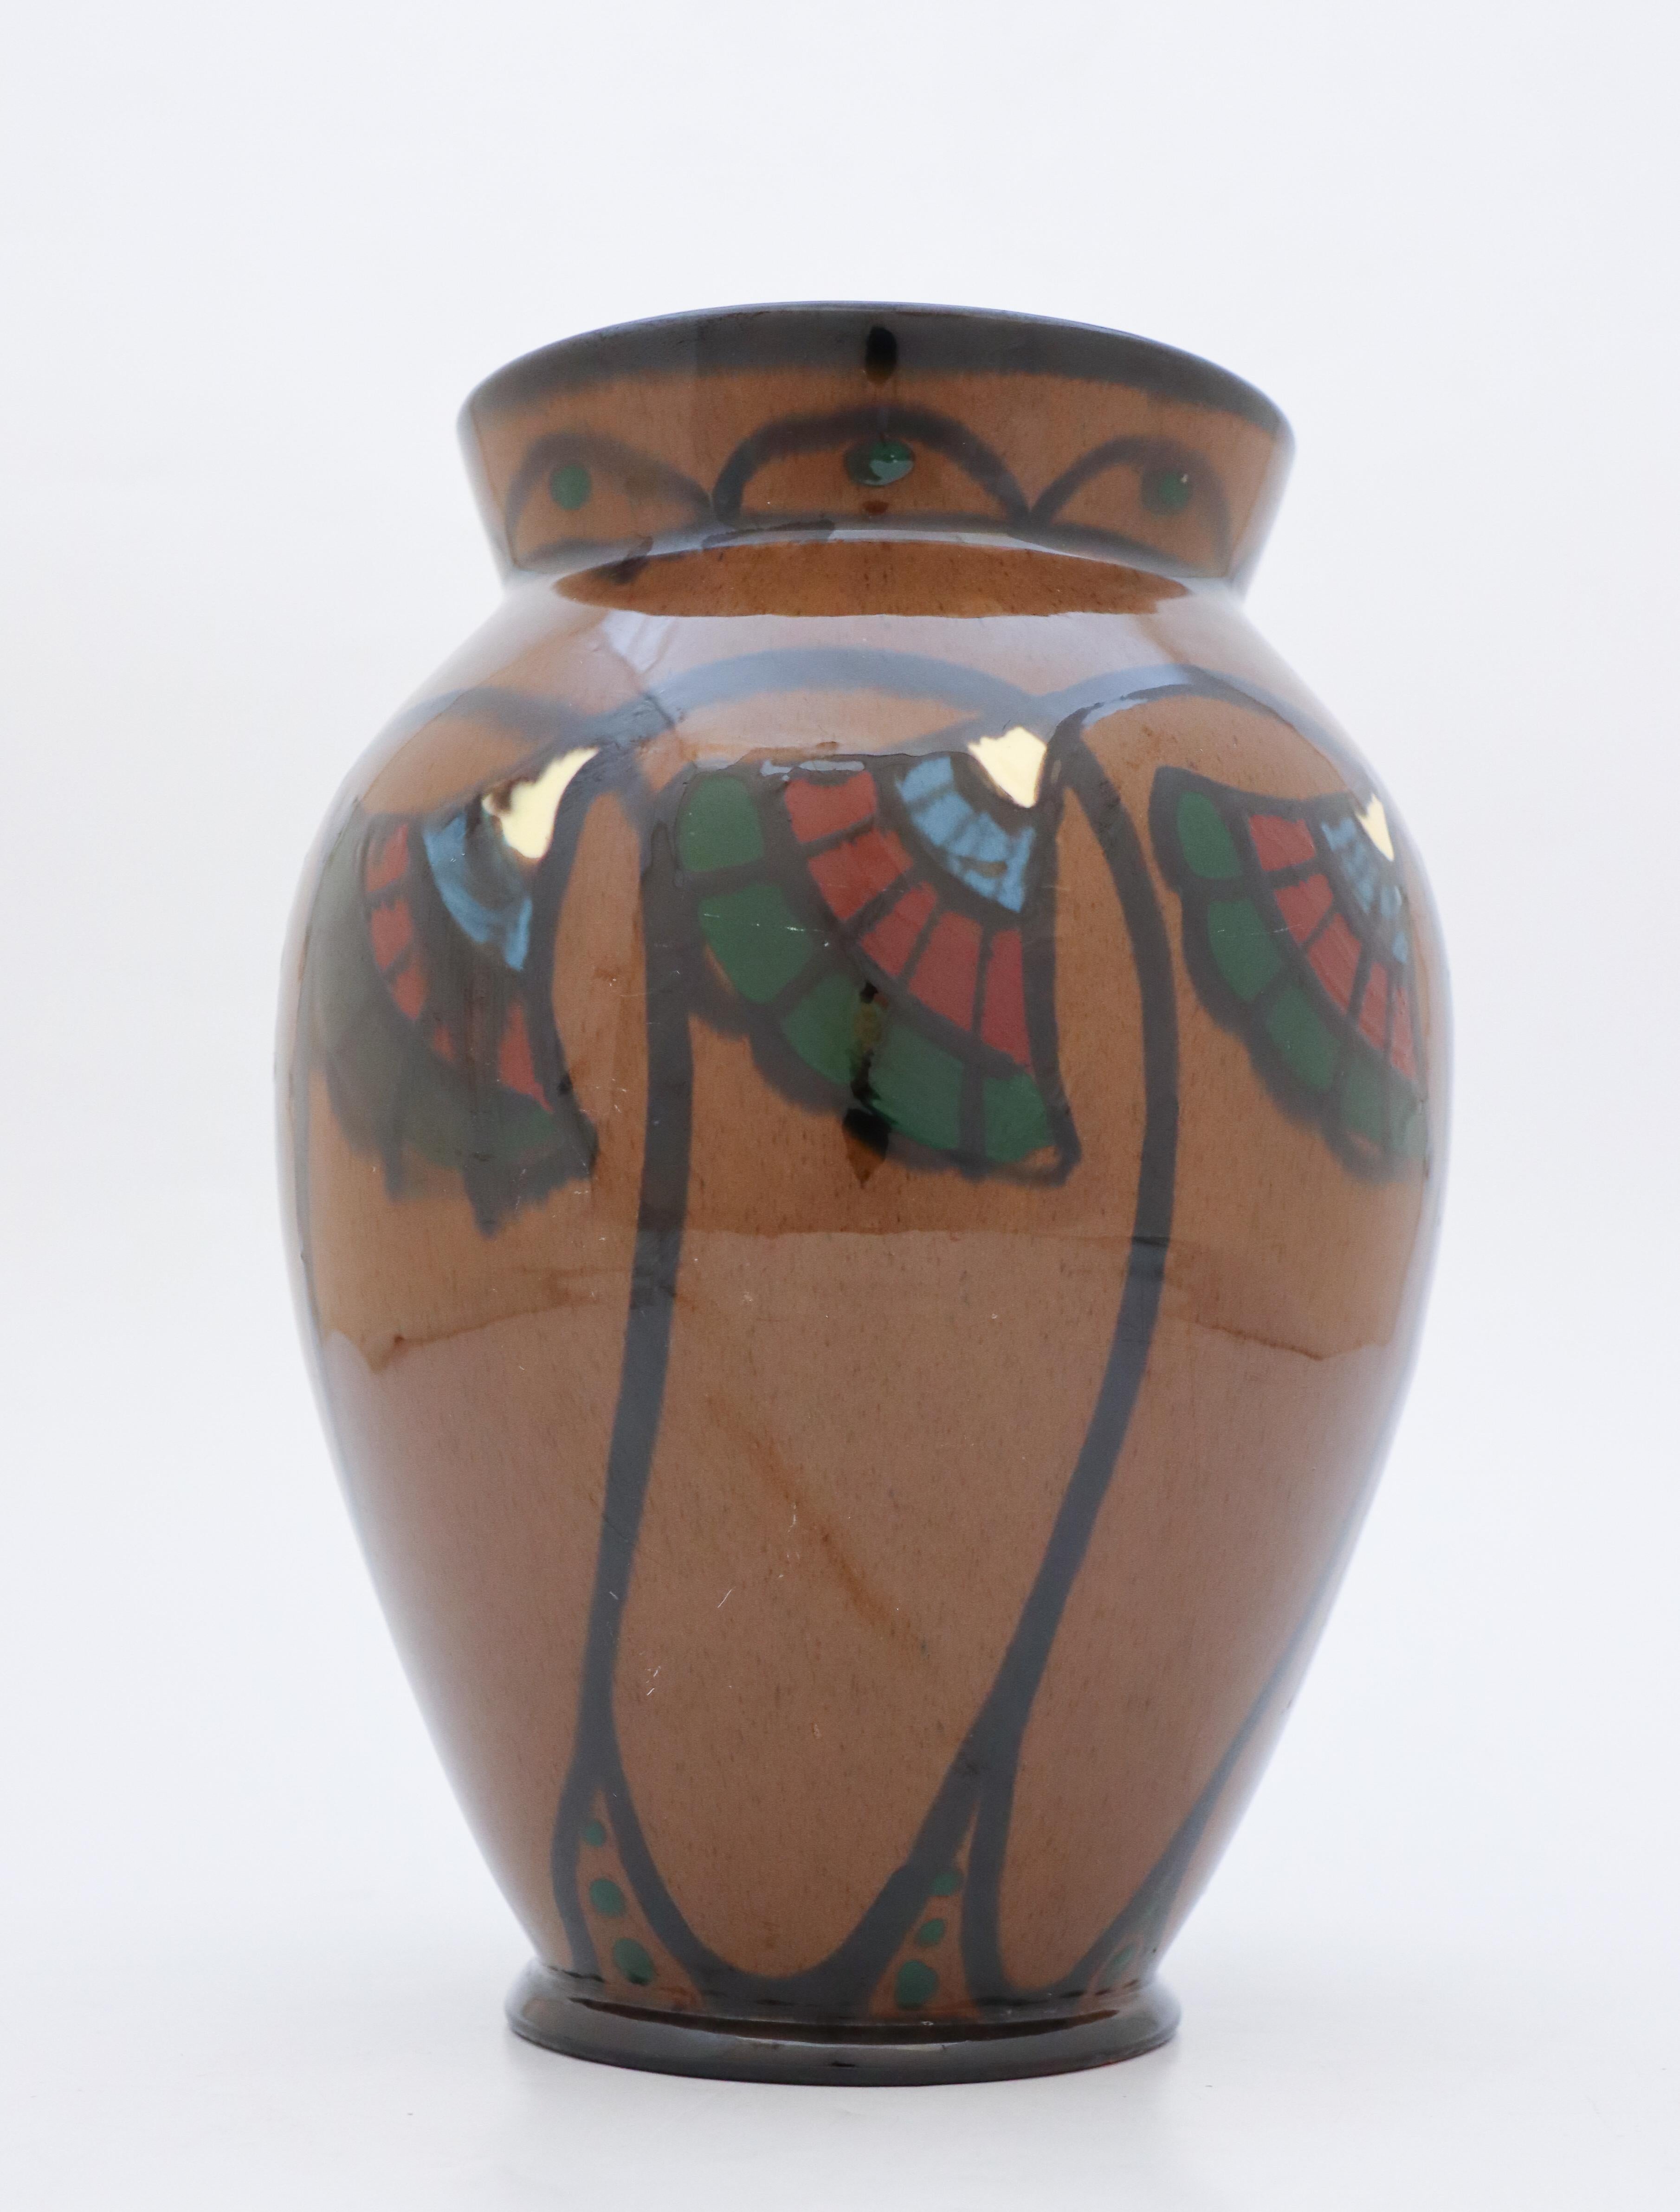 Un joli vase au décor Art Nouveau Floral conçu à Upsala Ekeby au début du 20ème siècle. Le vase mesure 25 cm de haut et est en très bon état, à l'exception de quelques rayures. 